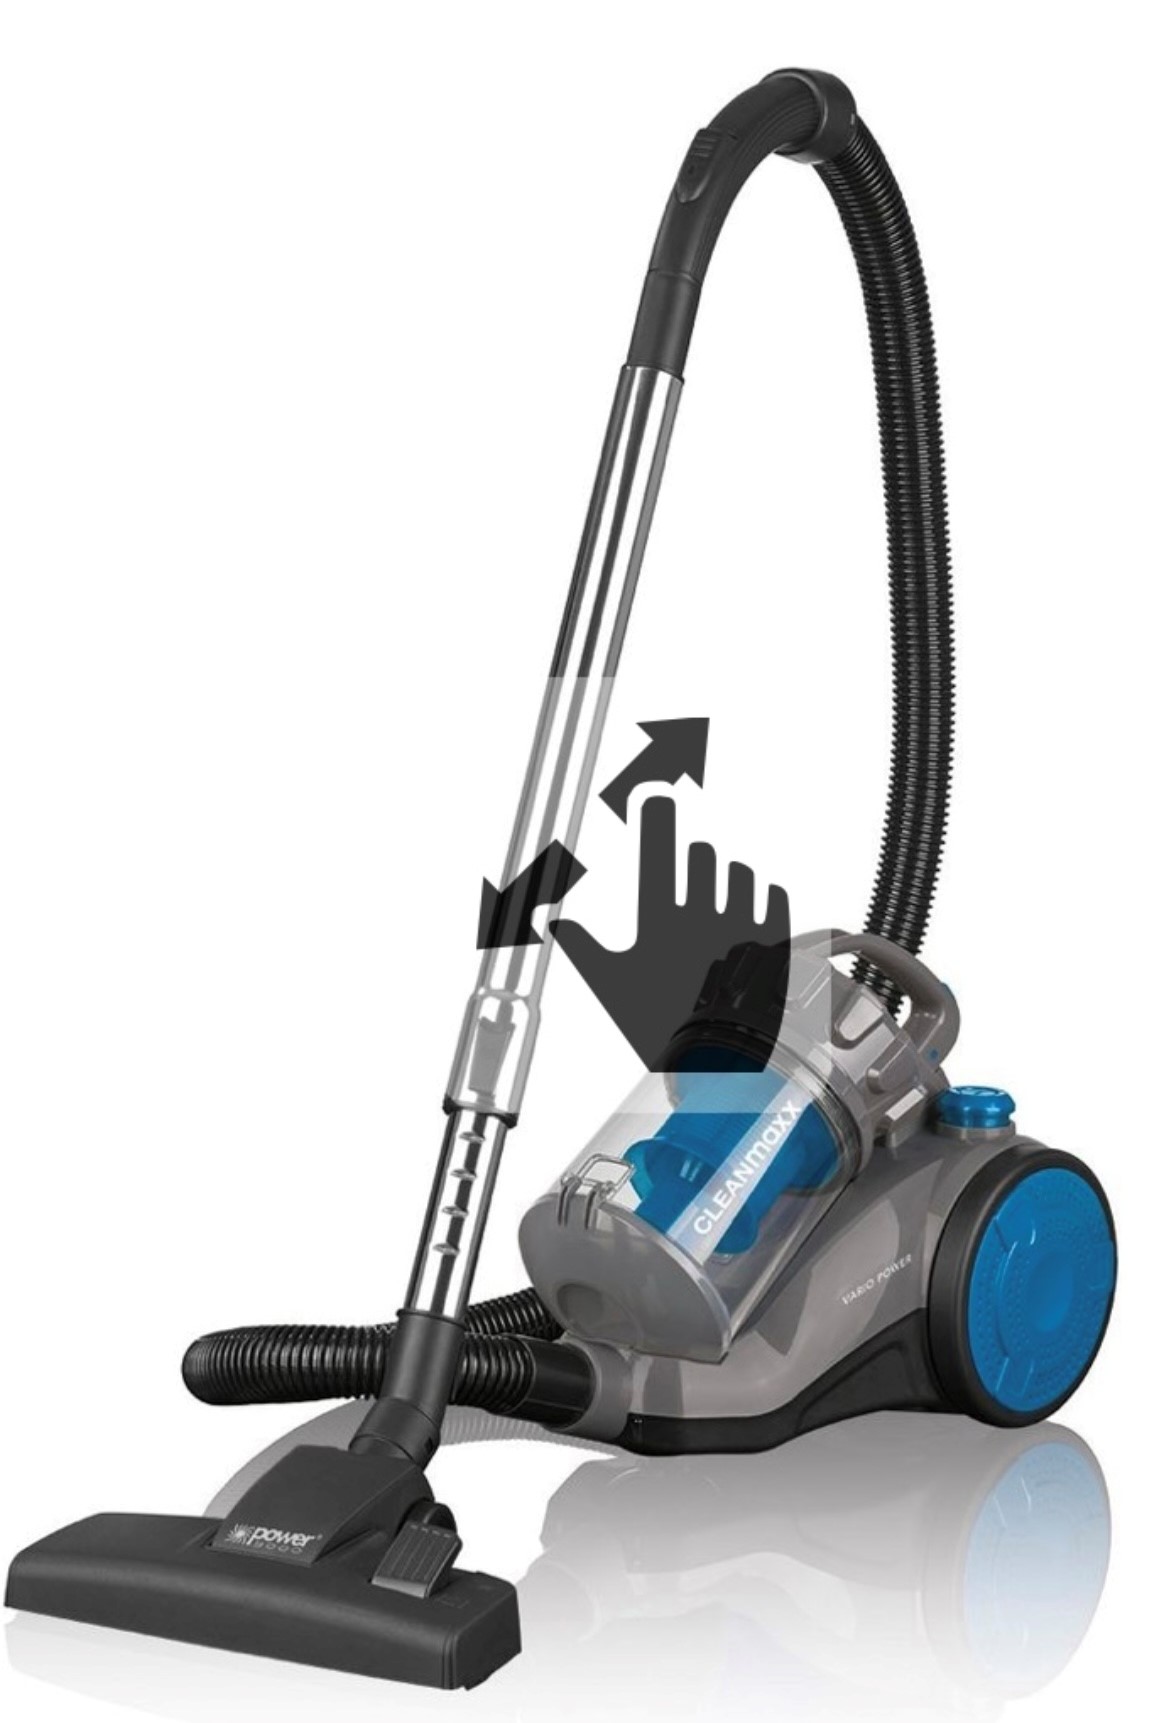 46977 - Cleanmaxx vacuum cleaner 800 watts Europe